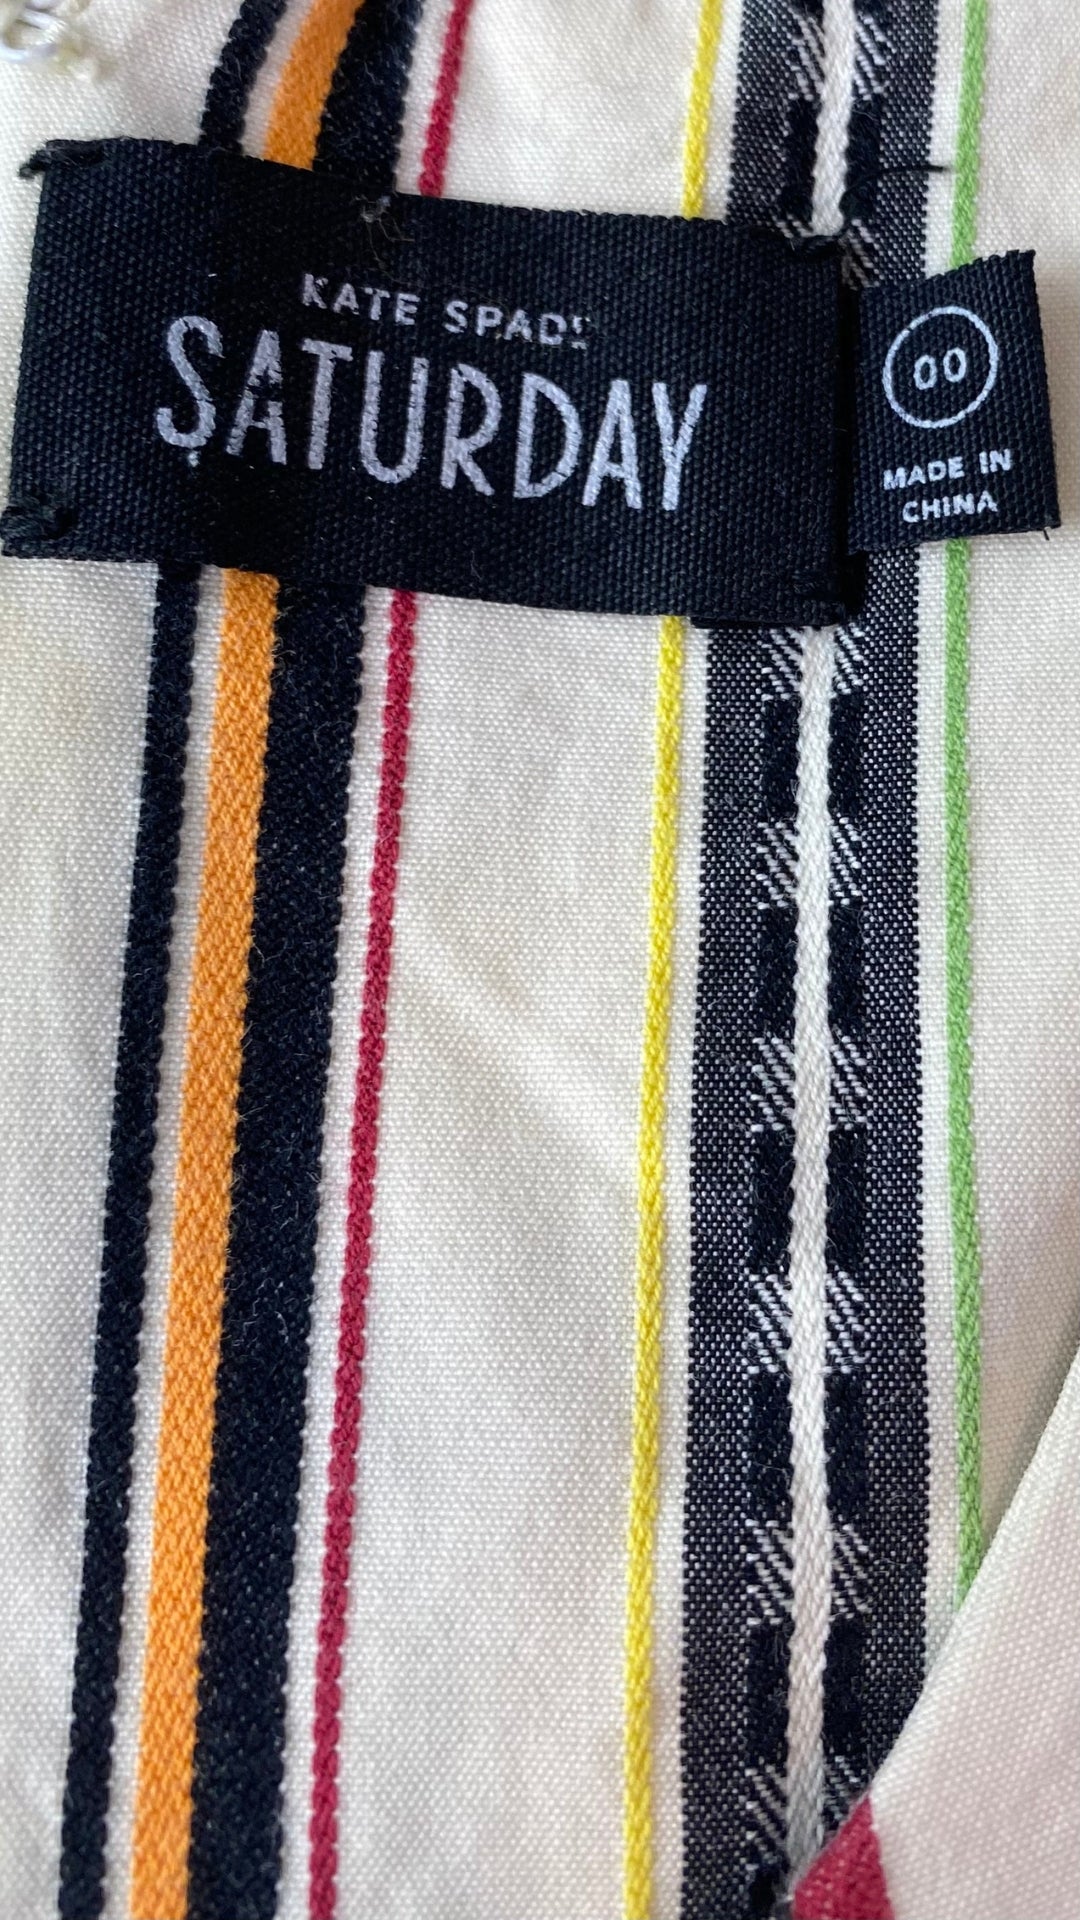 Robe à rayures multicolores Saturday par Kate Spade, taille 00 (xxs/xs). Vue de l'étiquette de marque et taille.